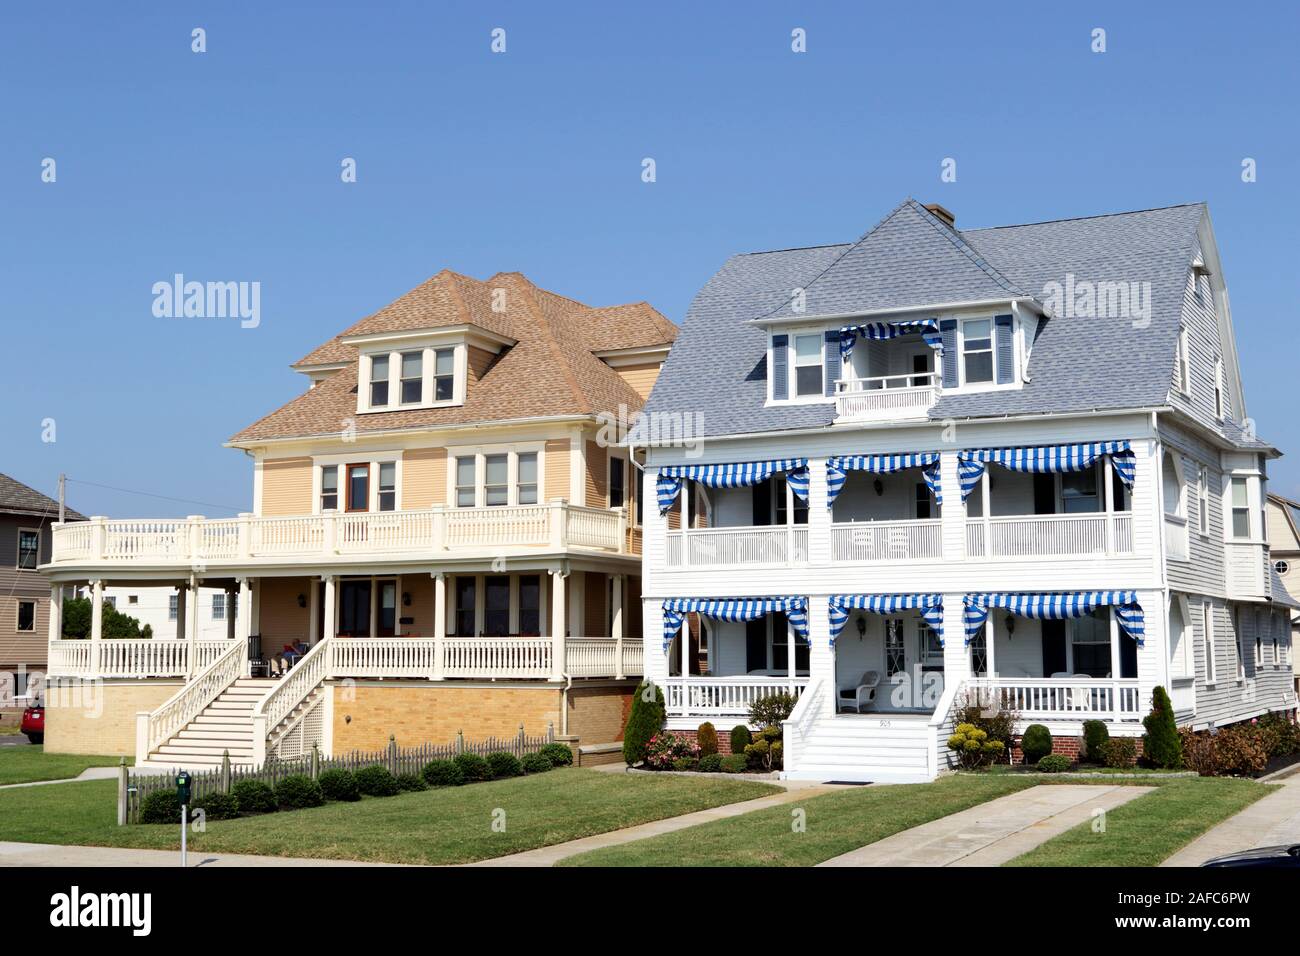 Beispiele der Architektur in Cape May, New Jersey. Ein Kurort vor allem für die Viktorianische thematische Strukturen bekannt Stockfoto